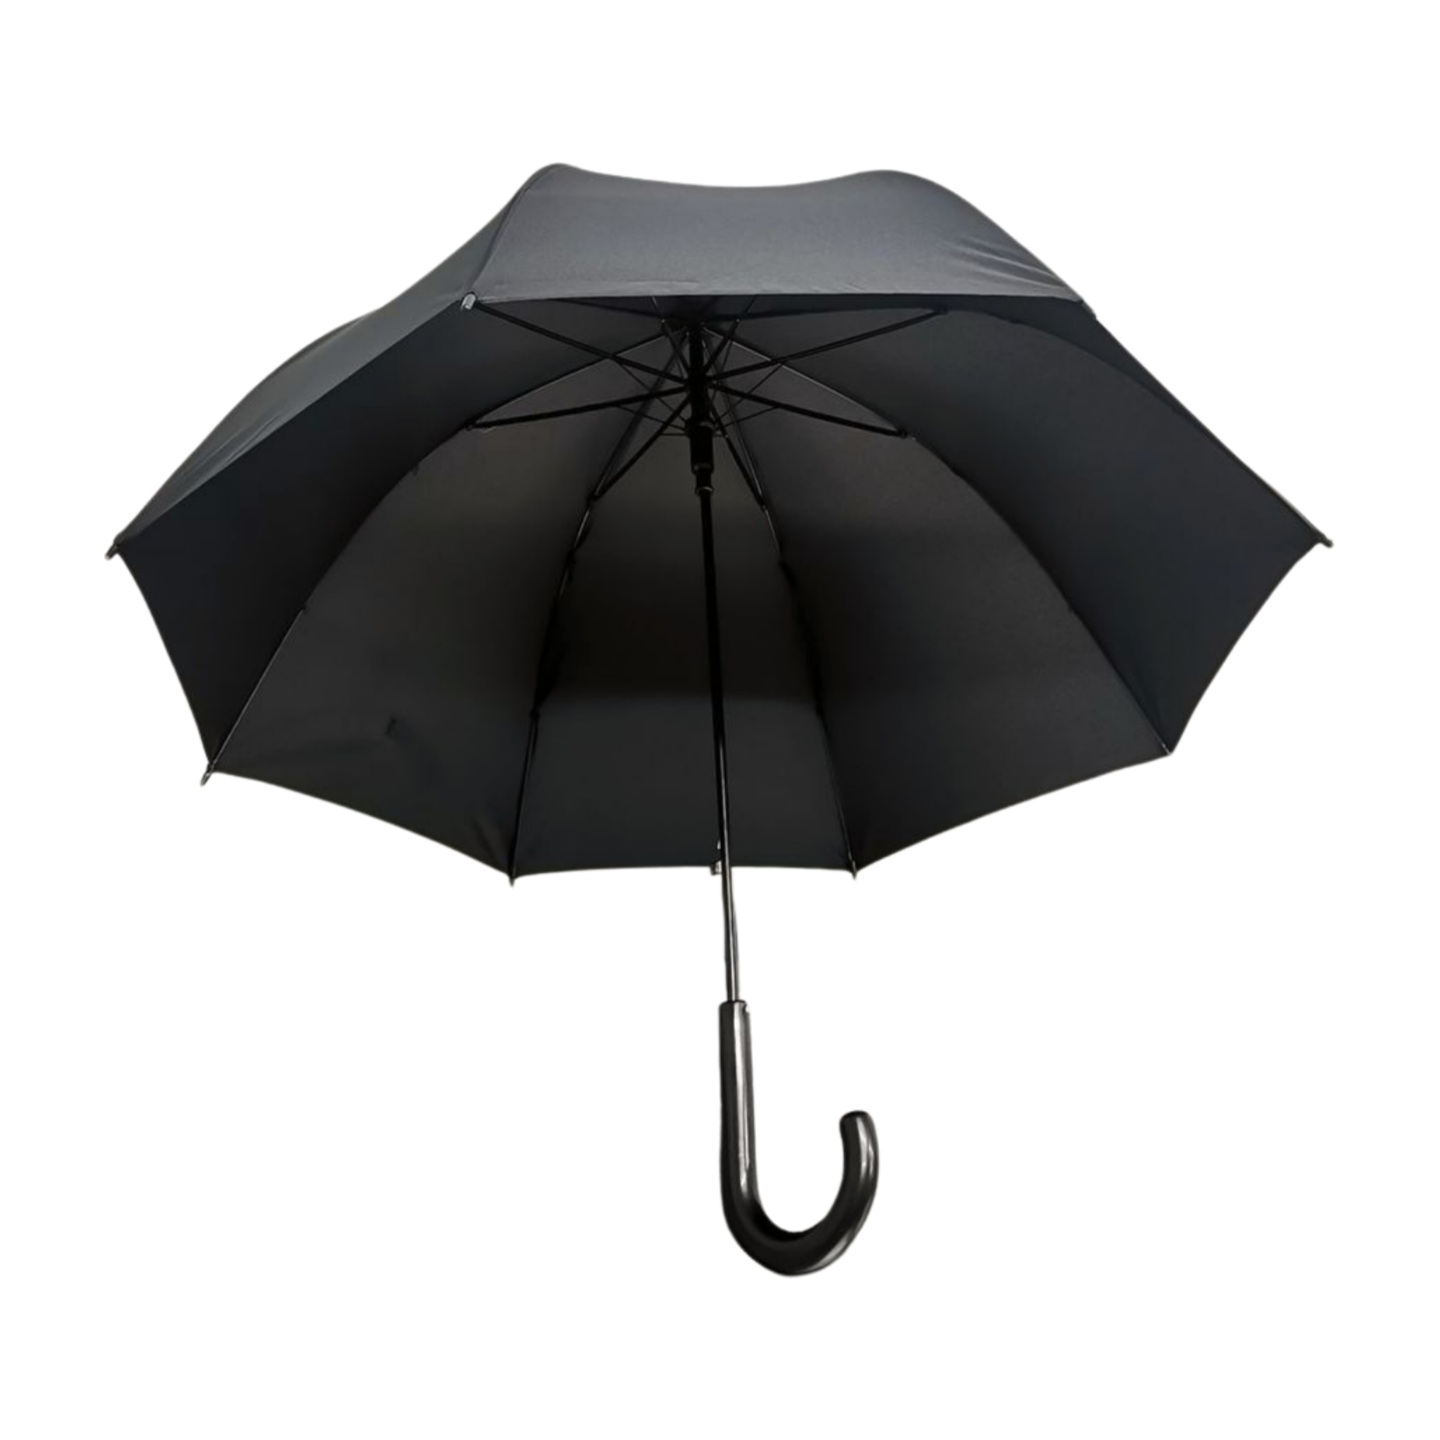 https://www.hodaumbrella.com/classic-dome-umbrella-product/